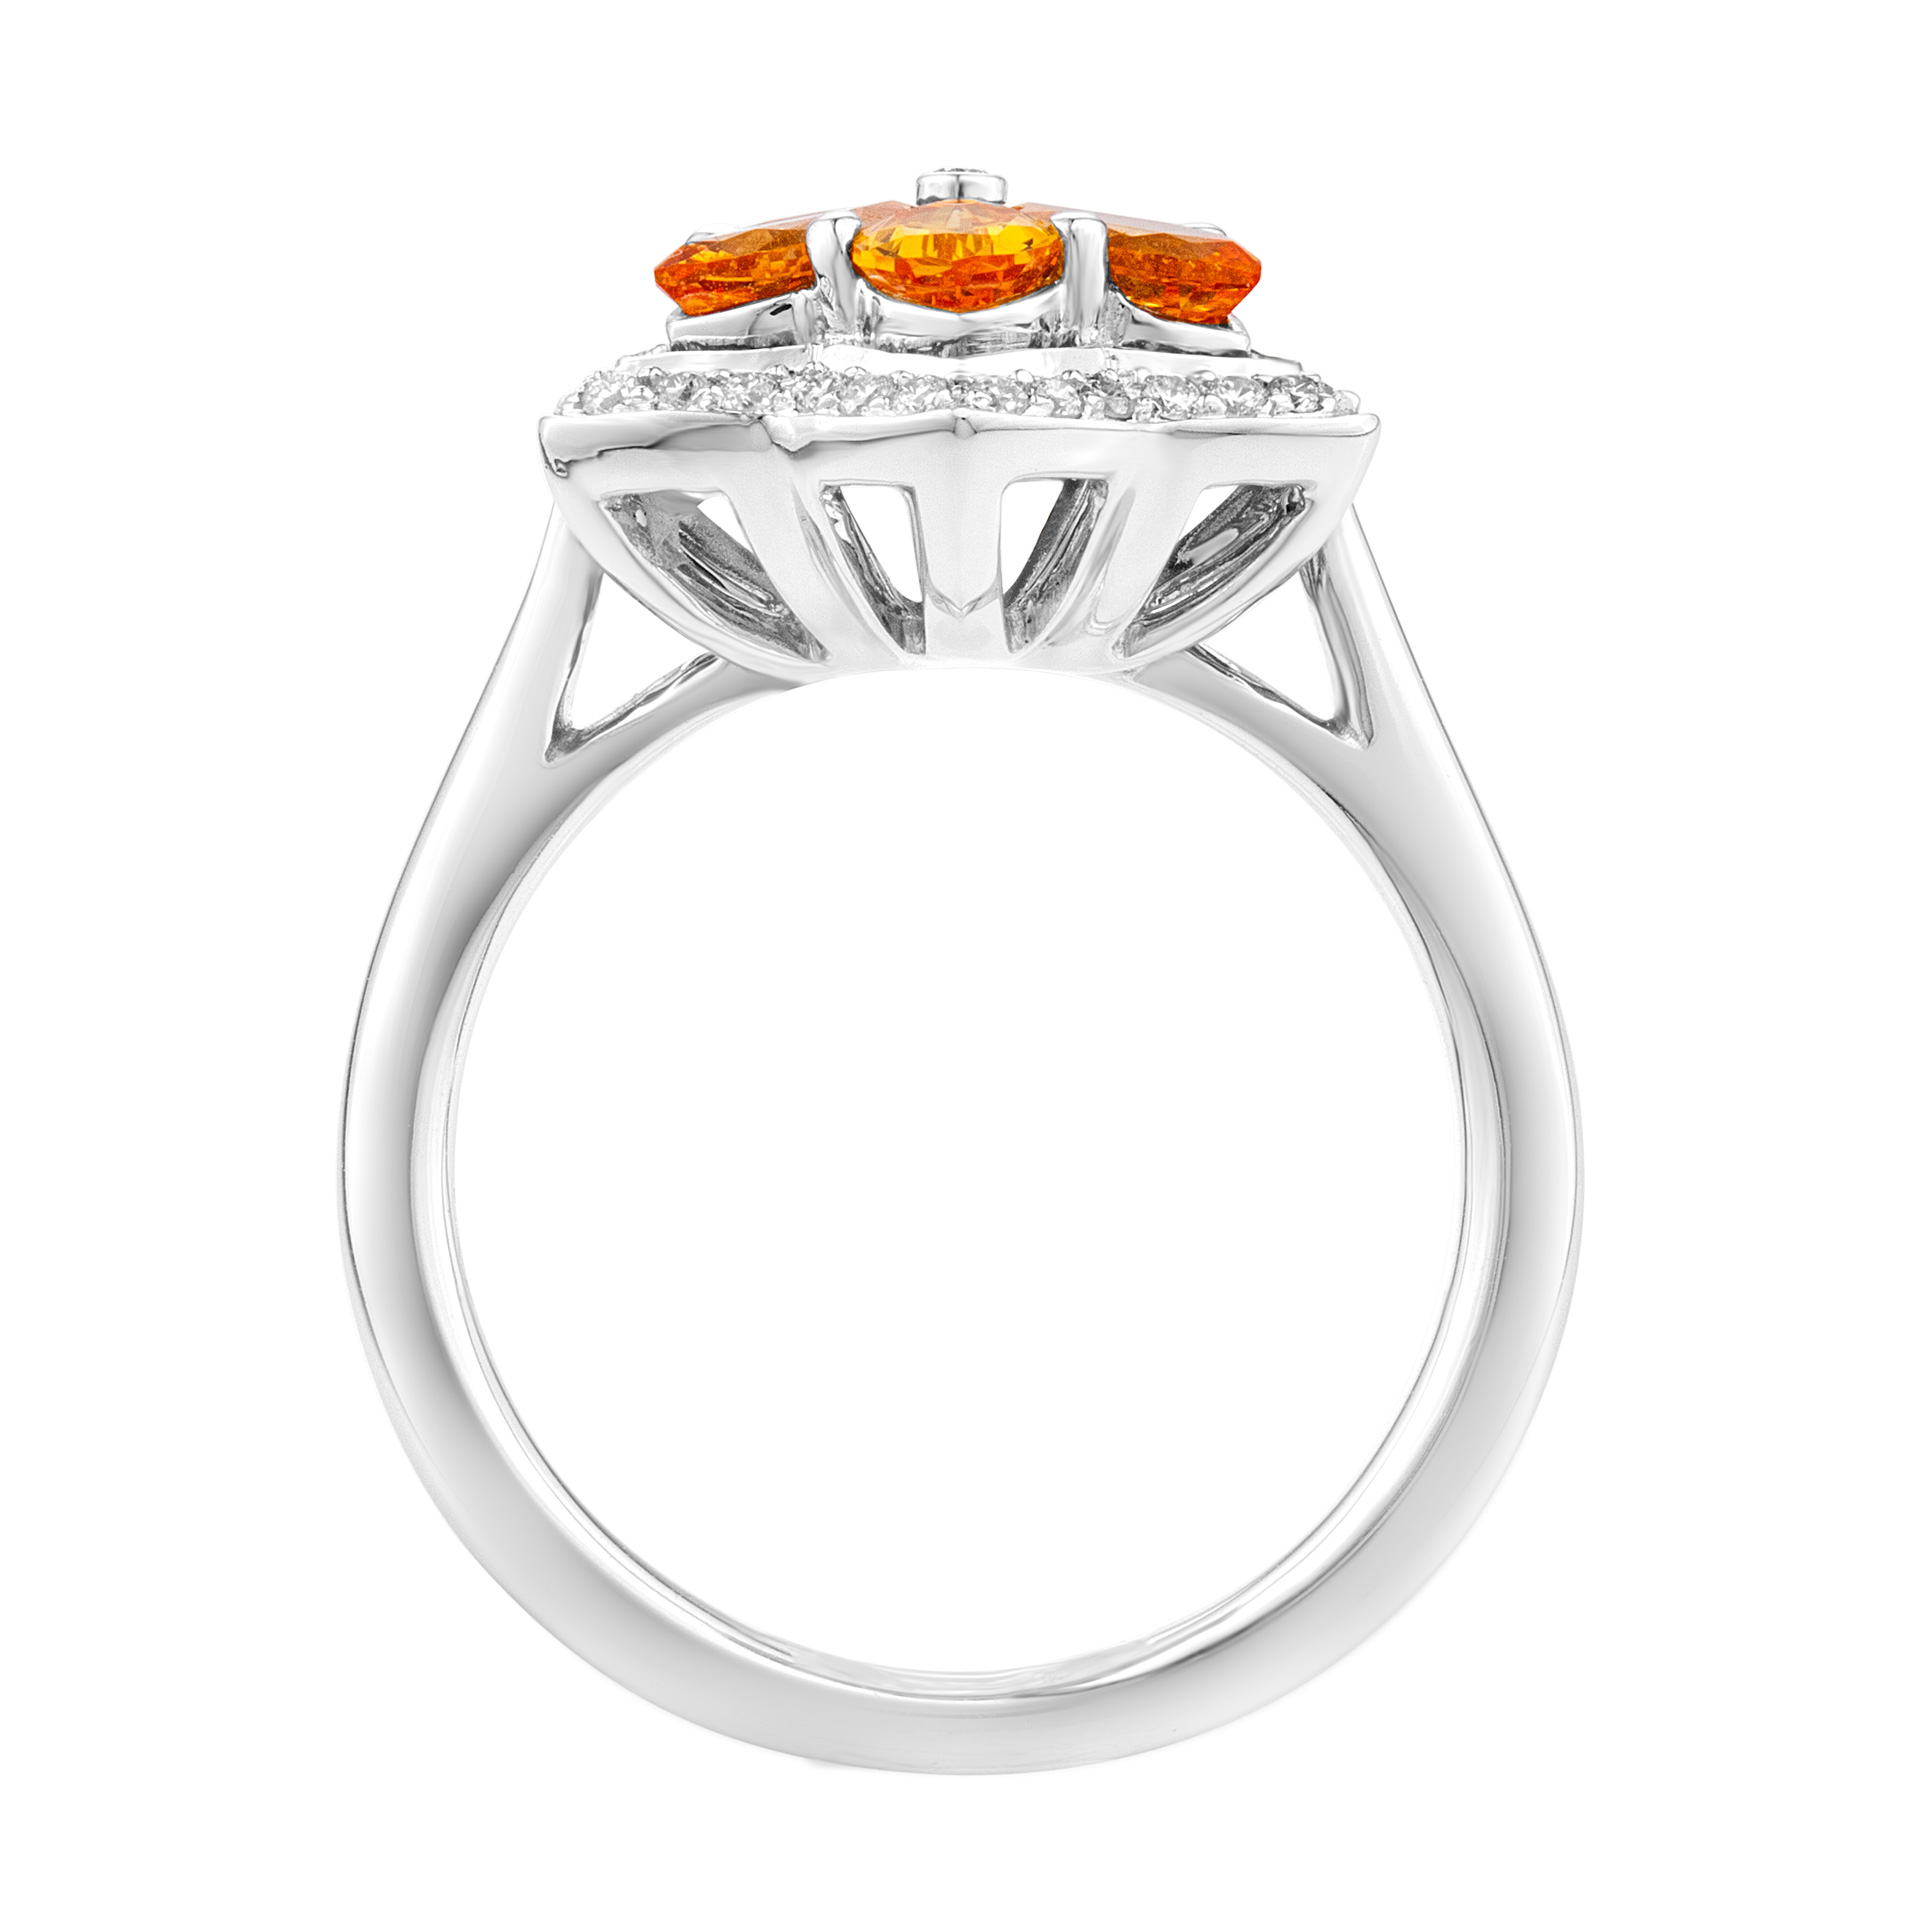 Orange sapphire & diamond flower ring in 18k white gold image 2